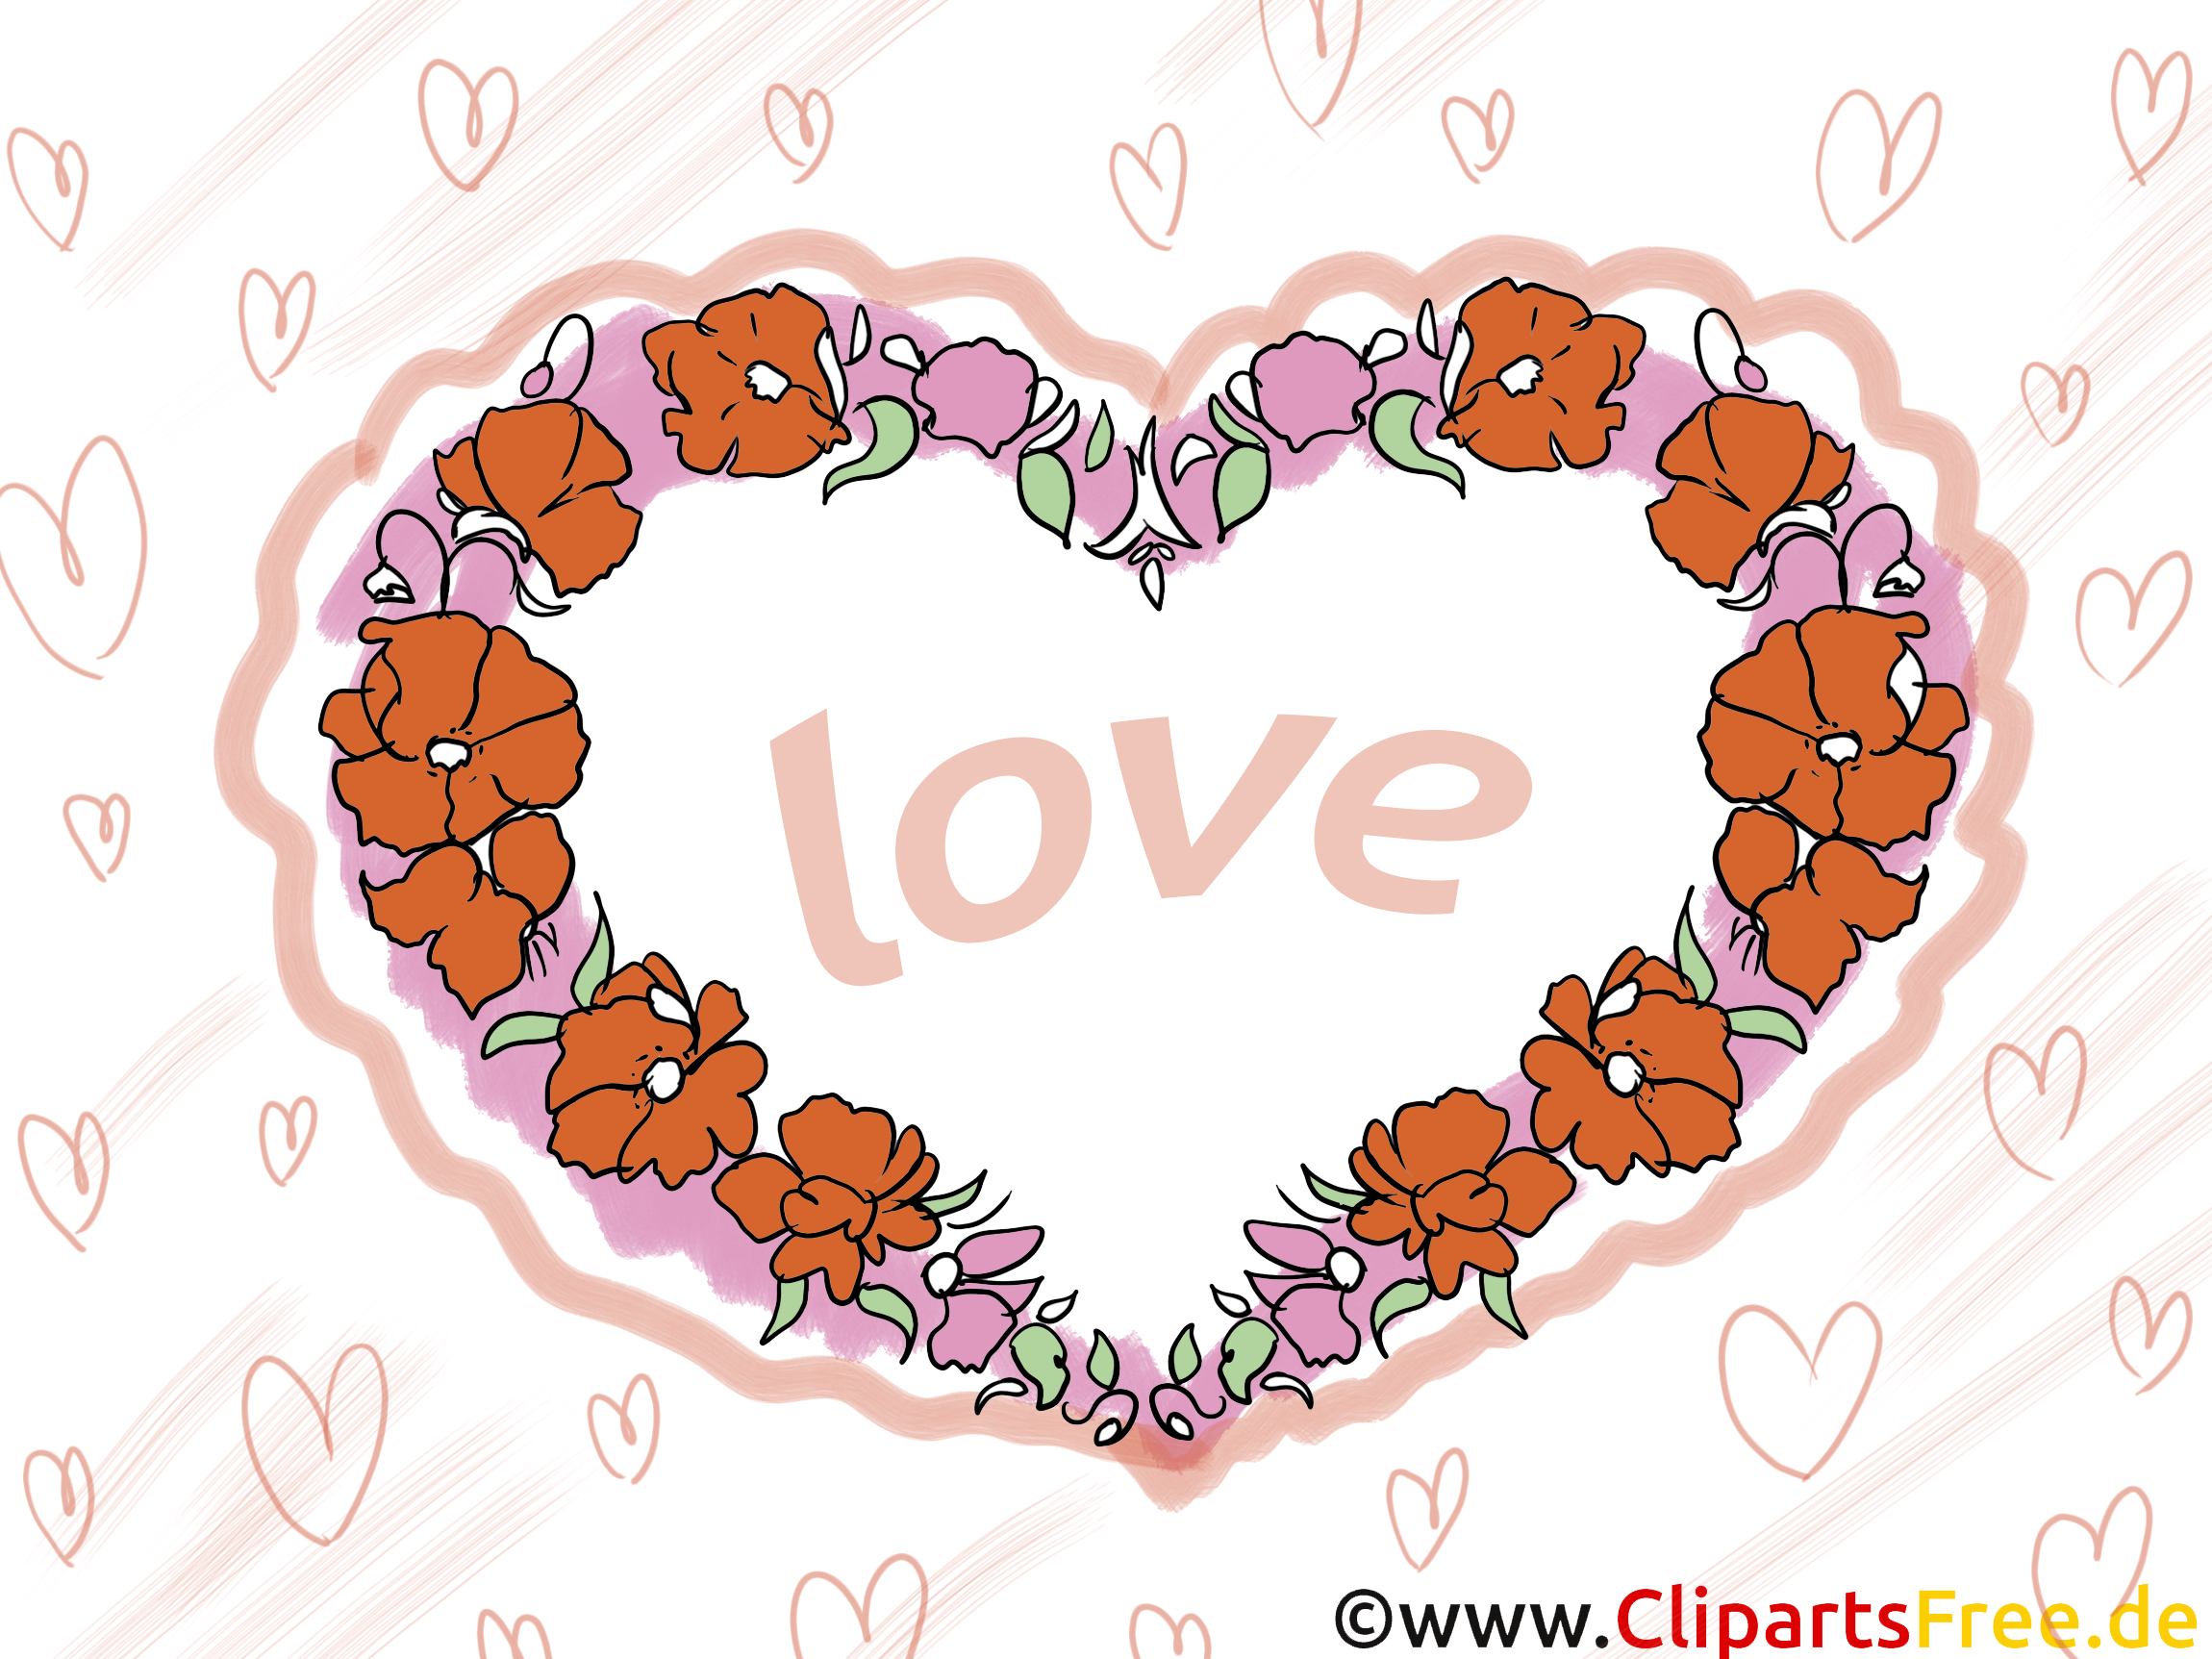 Amour illustration - Coeur images gratuites